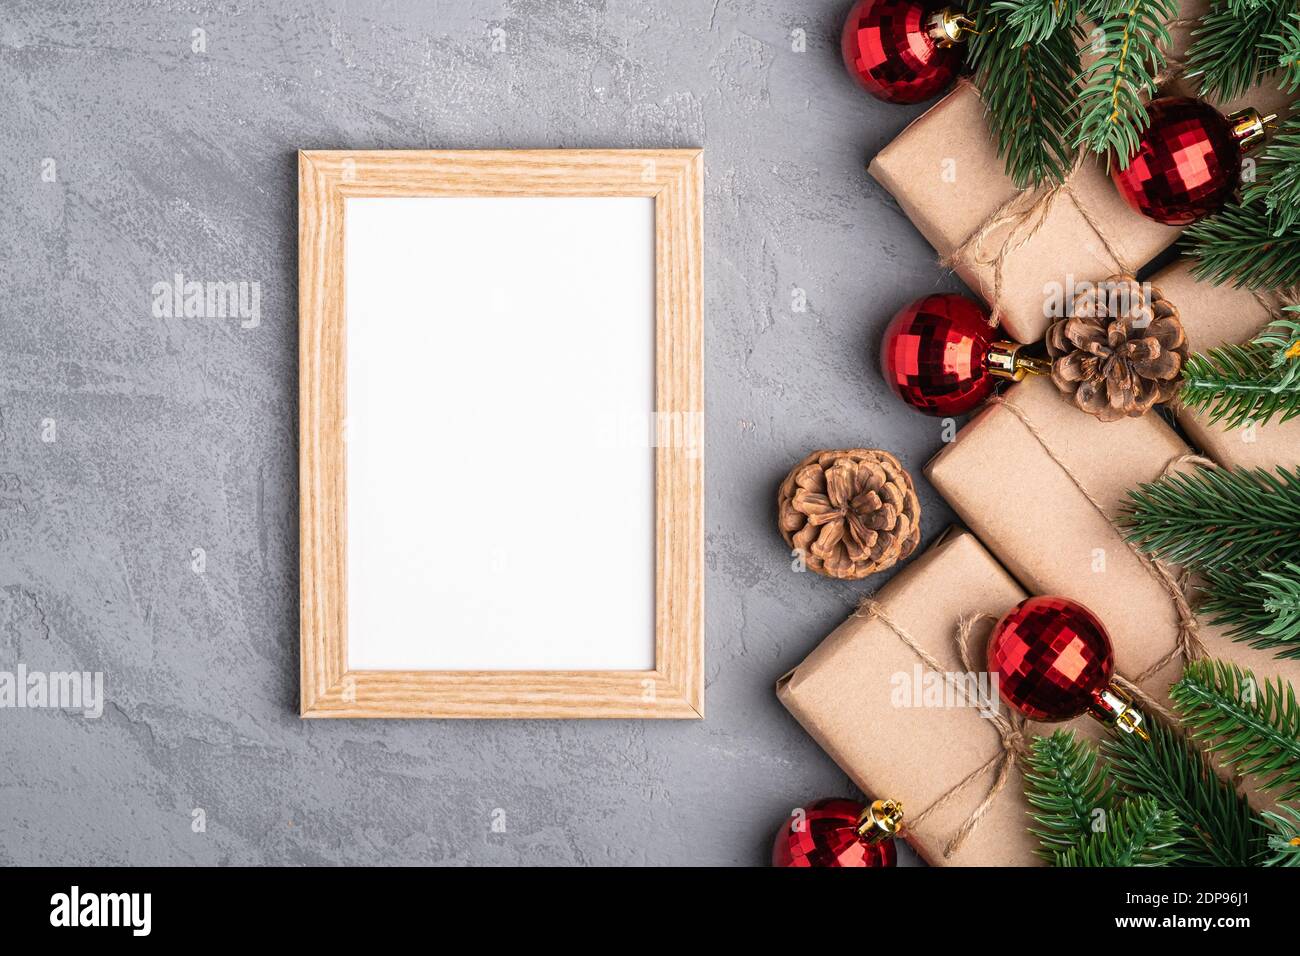 Natale vacanze composizione con immagine mockup cornice. Baubles rossi, regali e rami di abete. Foto Stock